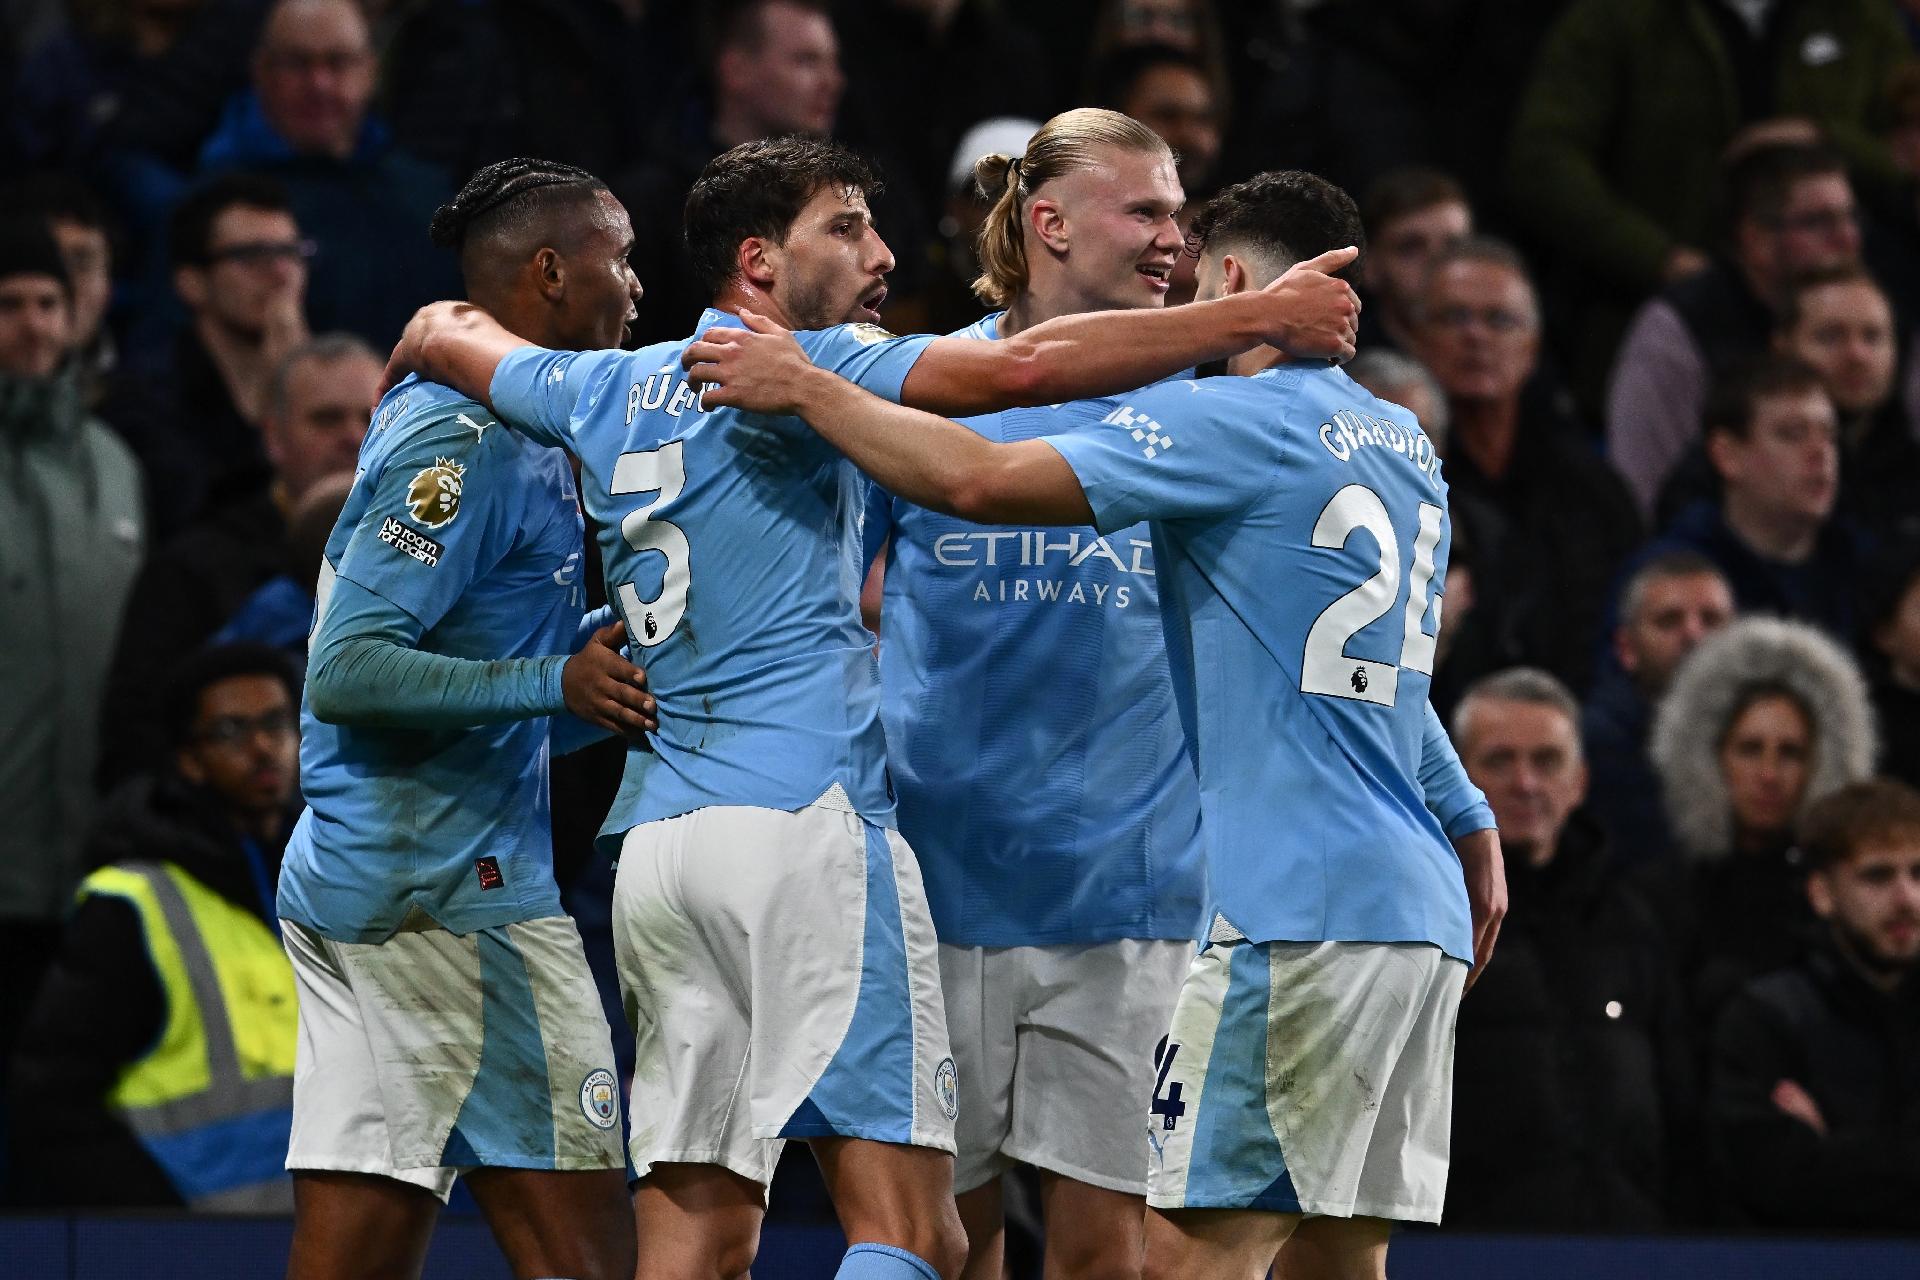 Manchester City quebra o jejum de vitórias e vence o Luton Town de virada  na Premier League